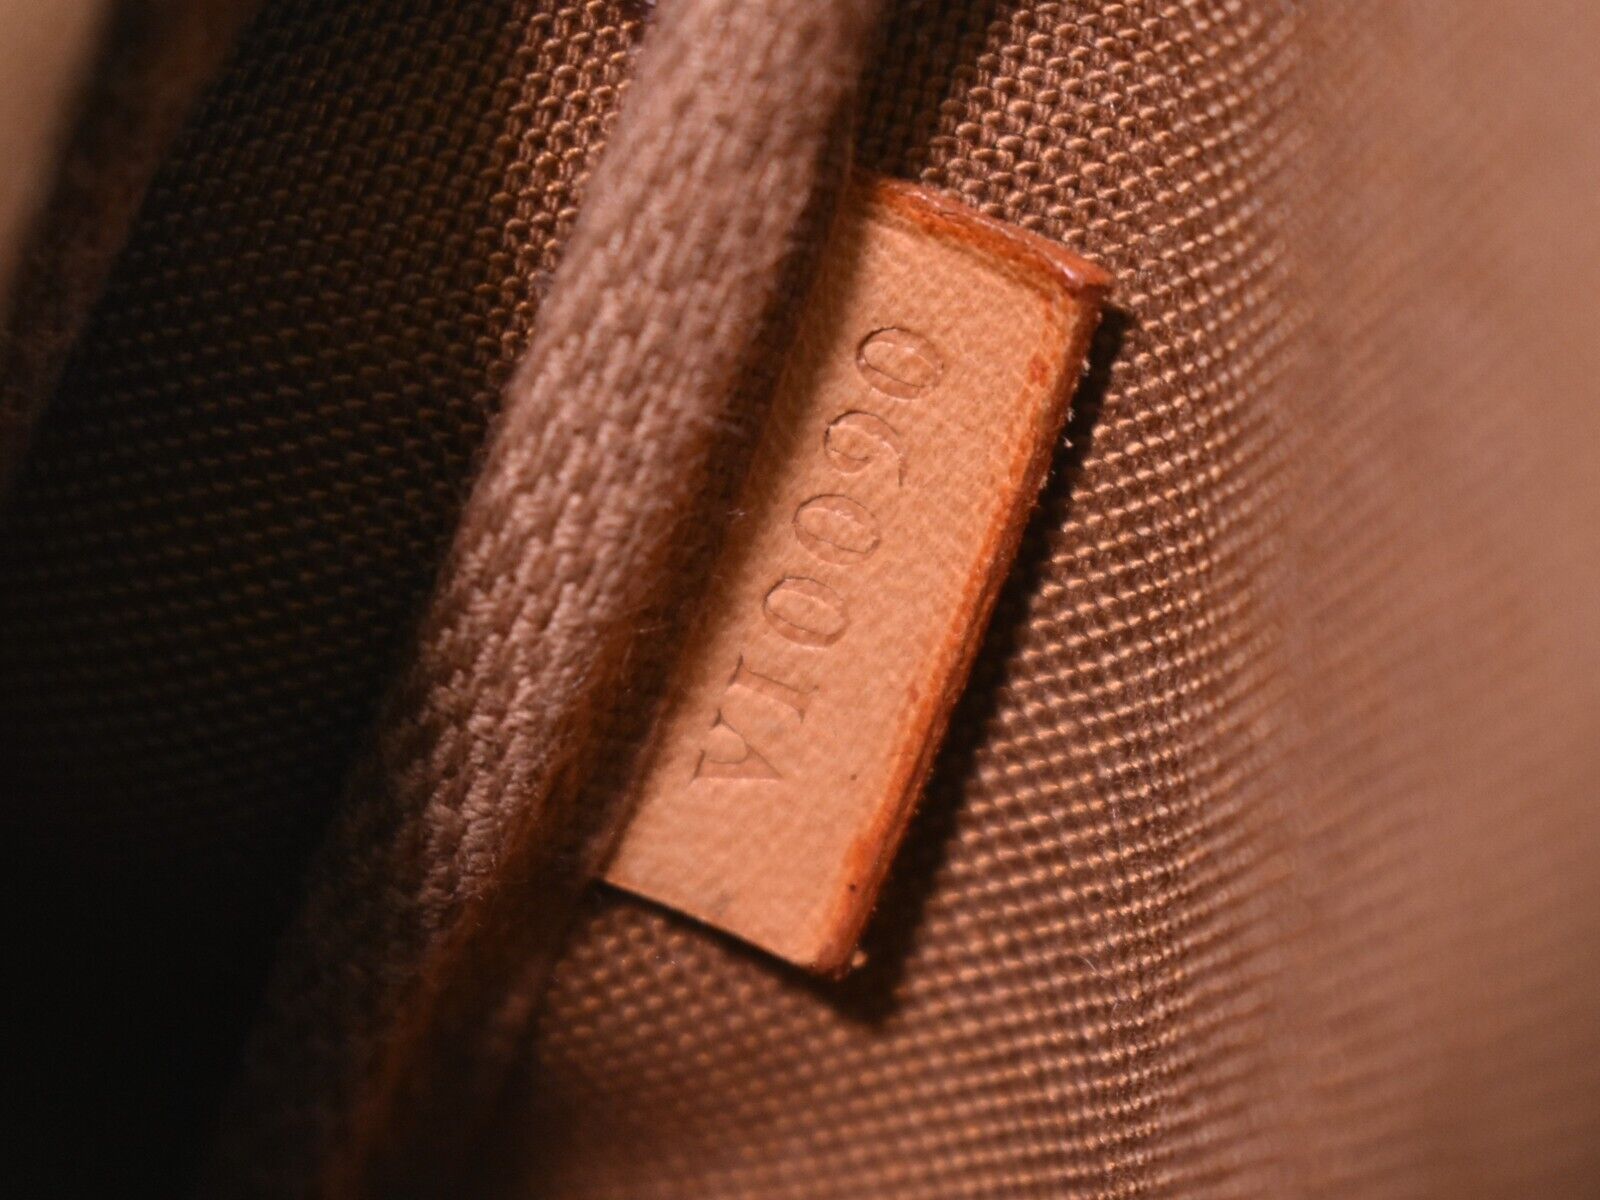 Pre-owned Louis Vuitton Pochette Accessoire Brown Canvas Clutch Bag ()